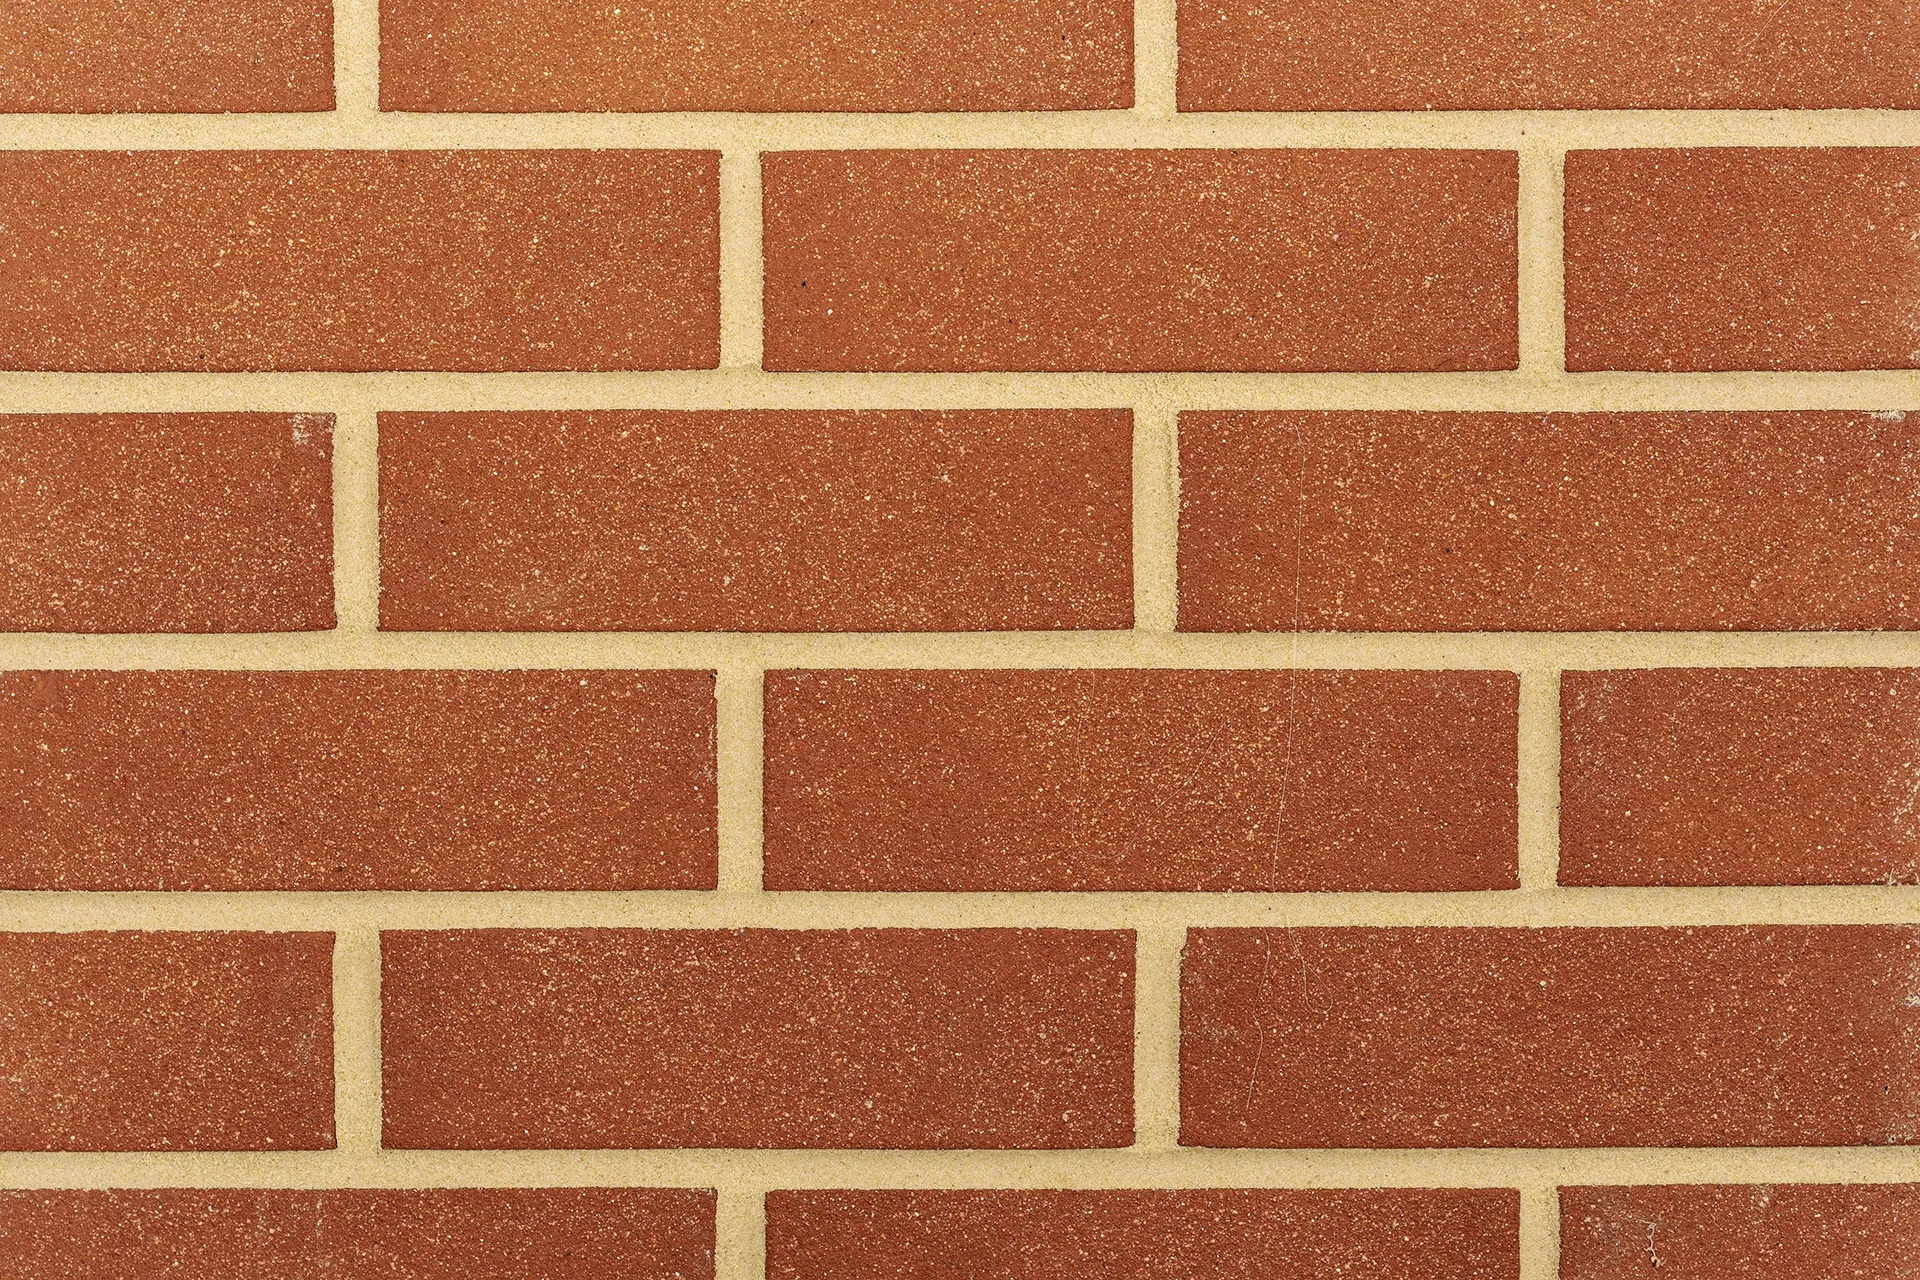 Moorland Red Sandface bricks